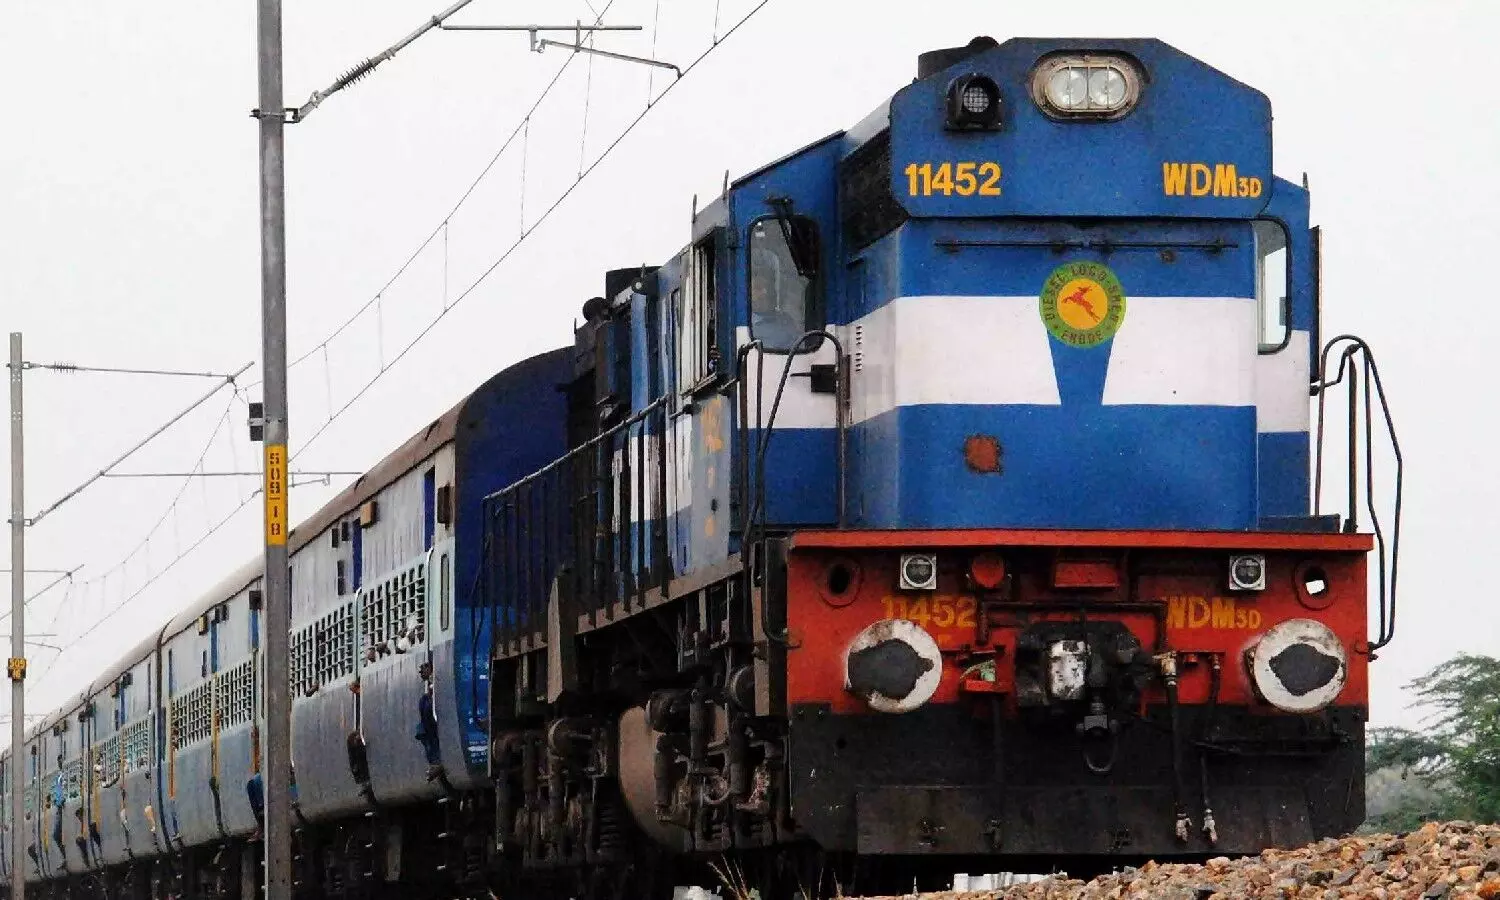 भारतीय रेलवे का यात्रियों को बड़ा तोहफा, 50 नई ट्रेनों को चलाने का किया ऐलान, देखें लिस्ट